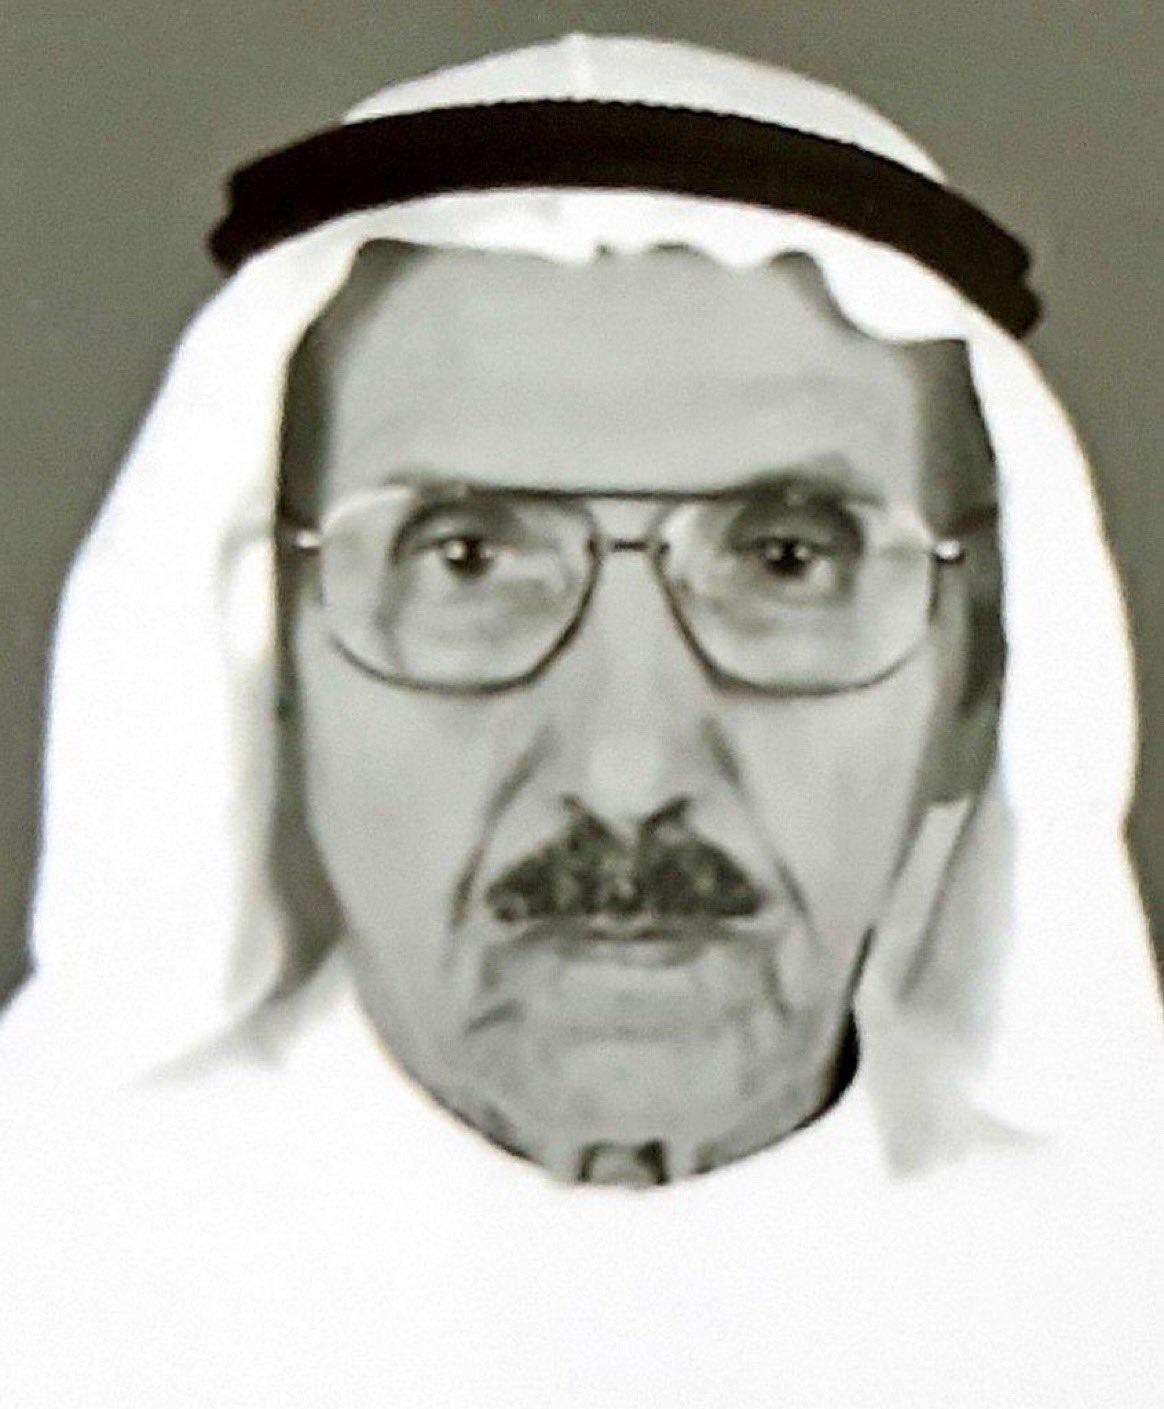 الراحل مبارك حمد الزويّر ... 21 سؤالا و23 اقتراحا في مجلس 1985